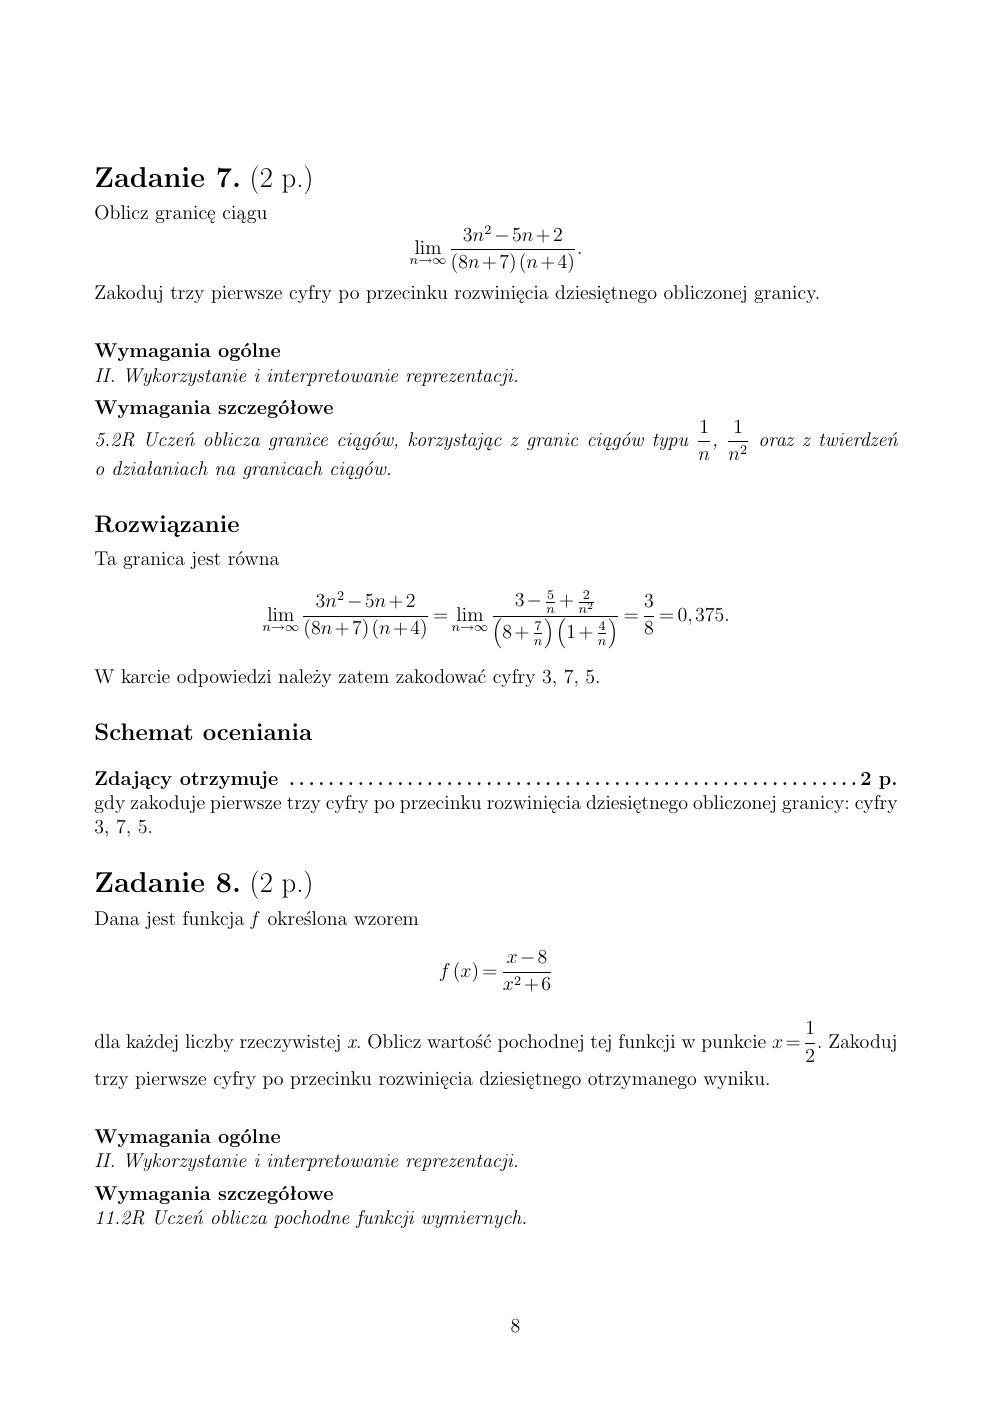 zasady oceniania - odpowiedzi - matematyka rozszerzony - matura 2015 przykładowa-08